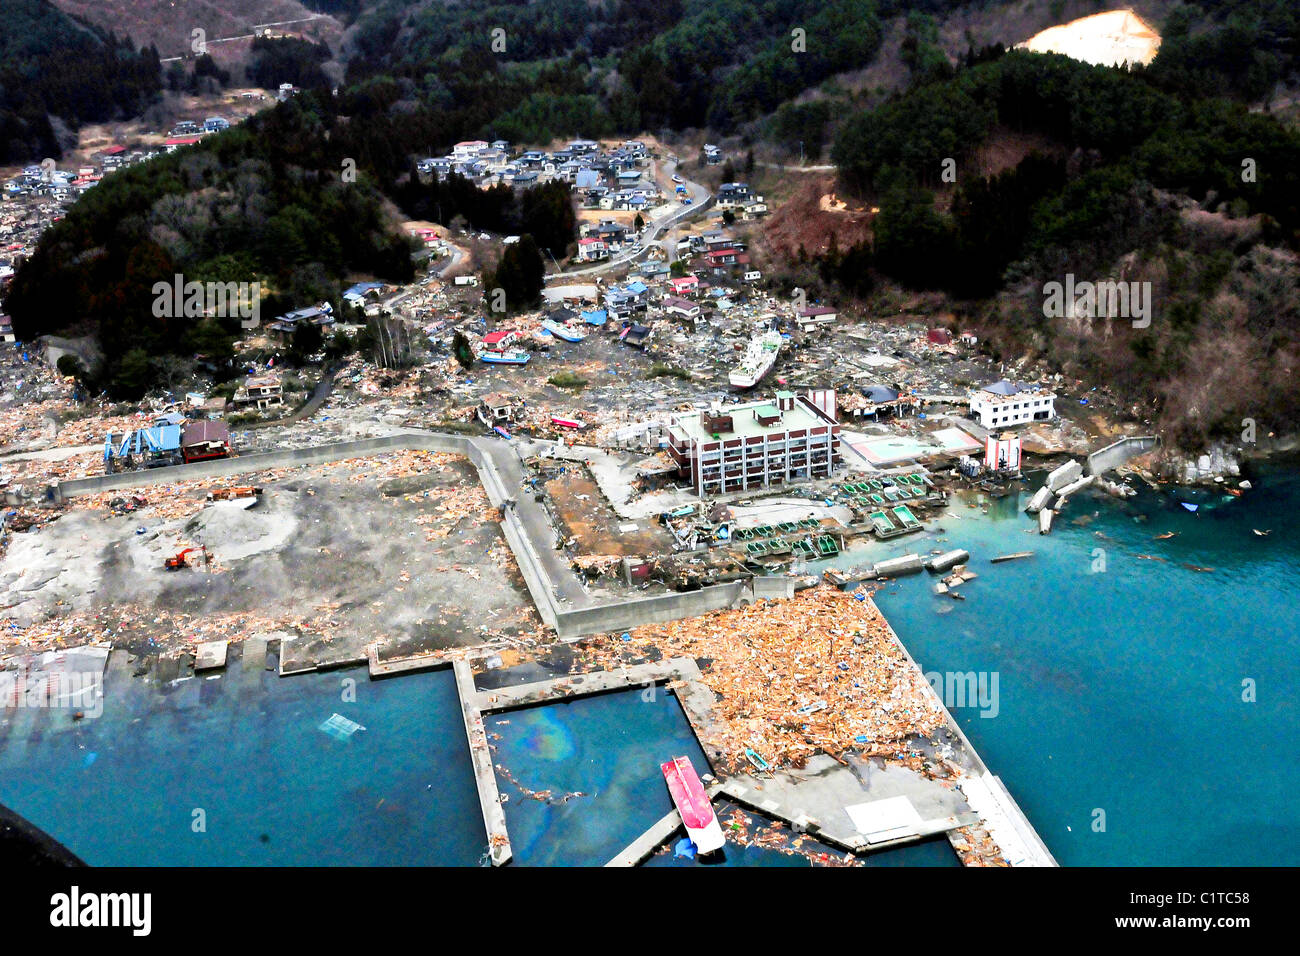 Una vista aérea de dañar Wakuya, Japón después de un terremoto de magnitud 9.0 y posterior tsunami que devastó el área. Foto de stock